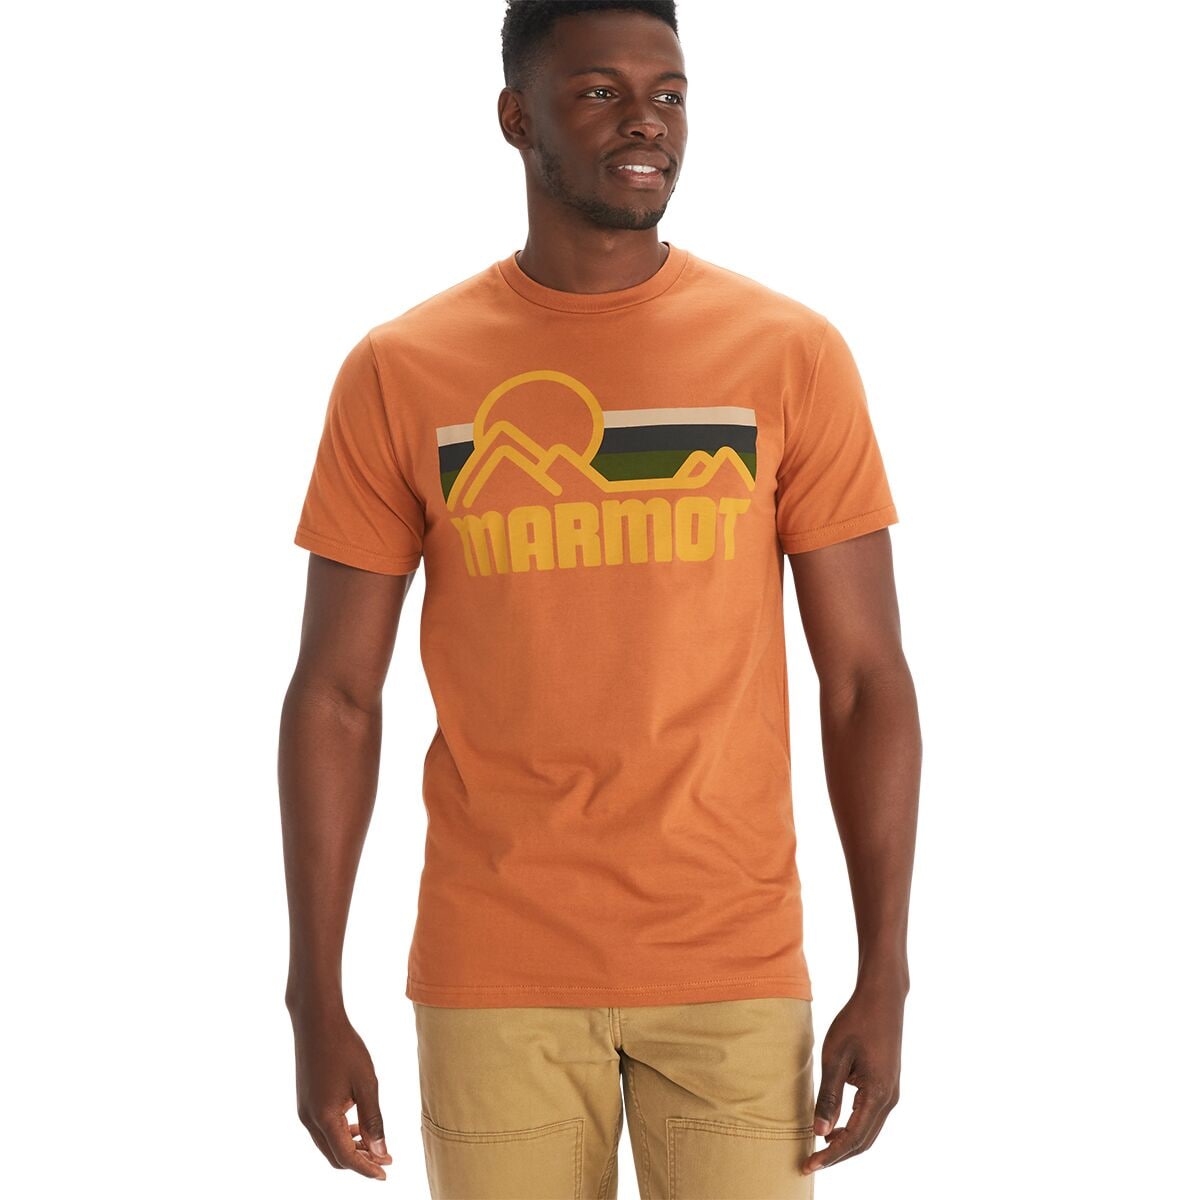 Coastal T-Shirt - Men